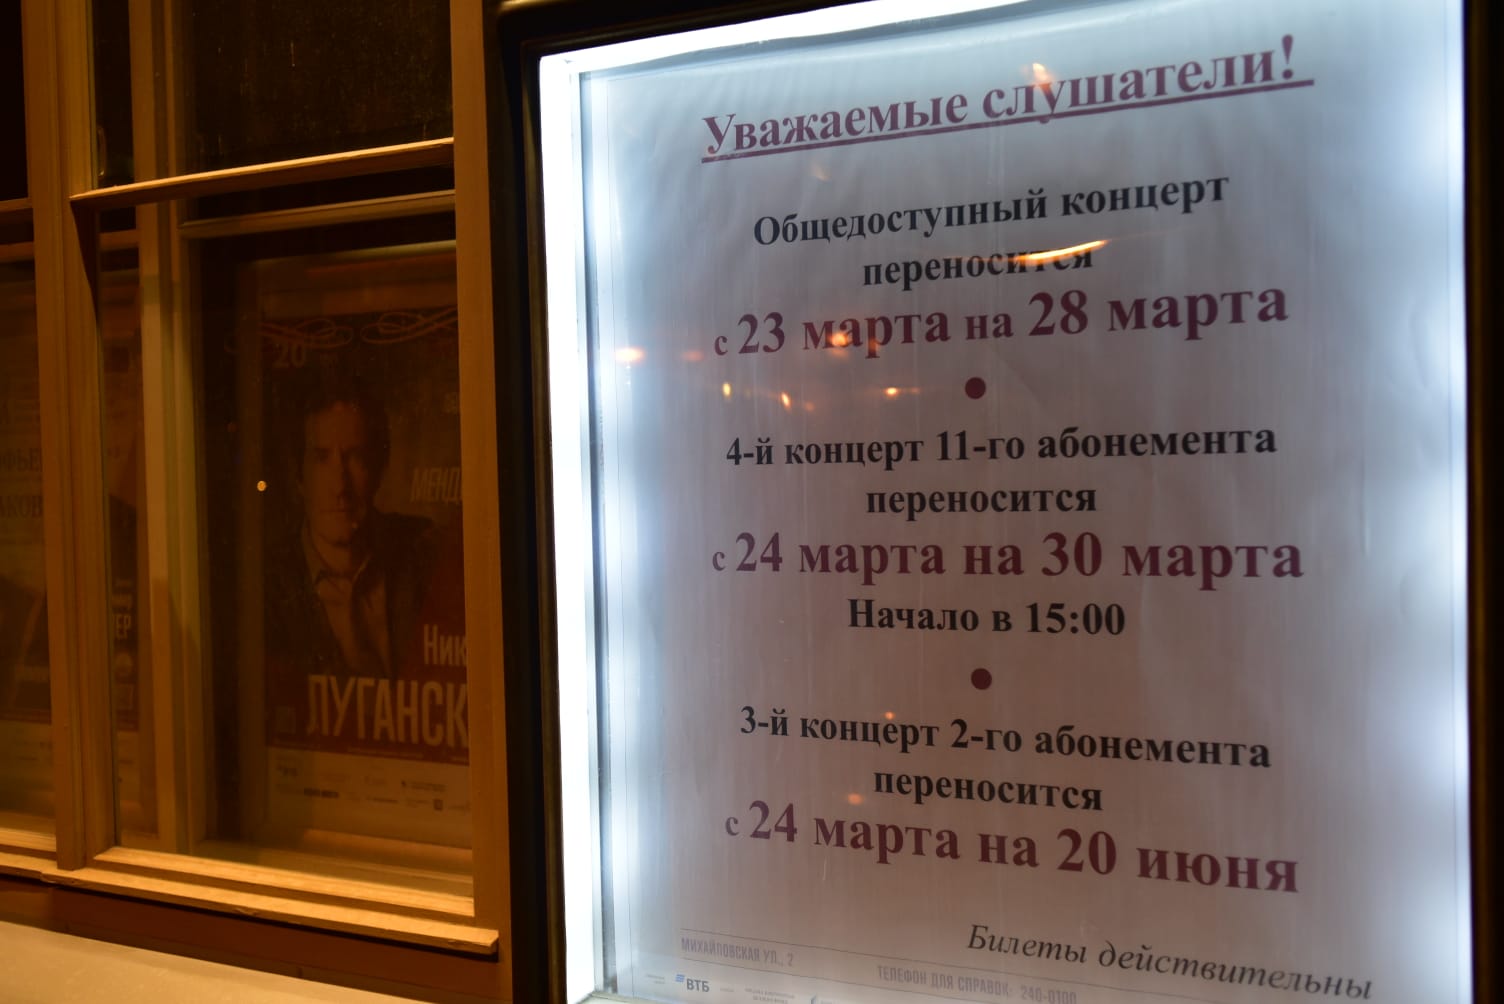 Санкт-Петербургская филармония им. Шостаковича сообщает о переносе концертов на другие даты